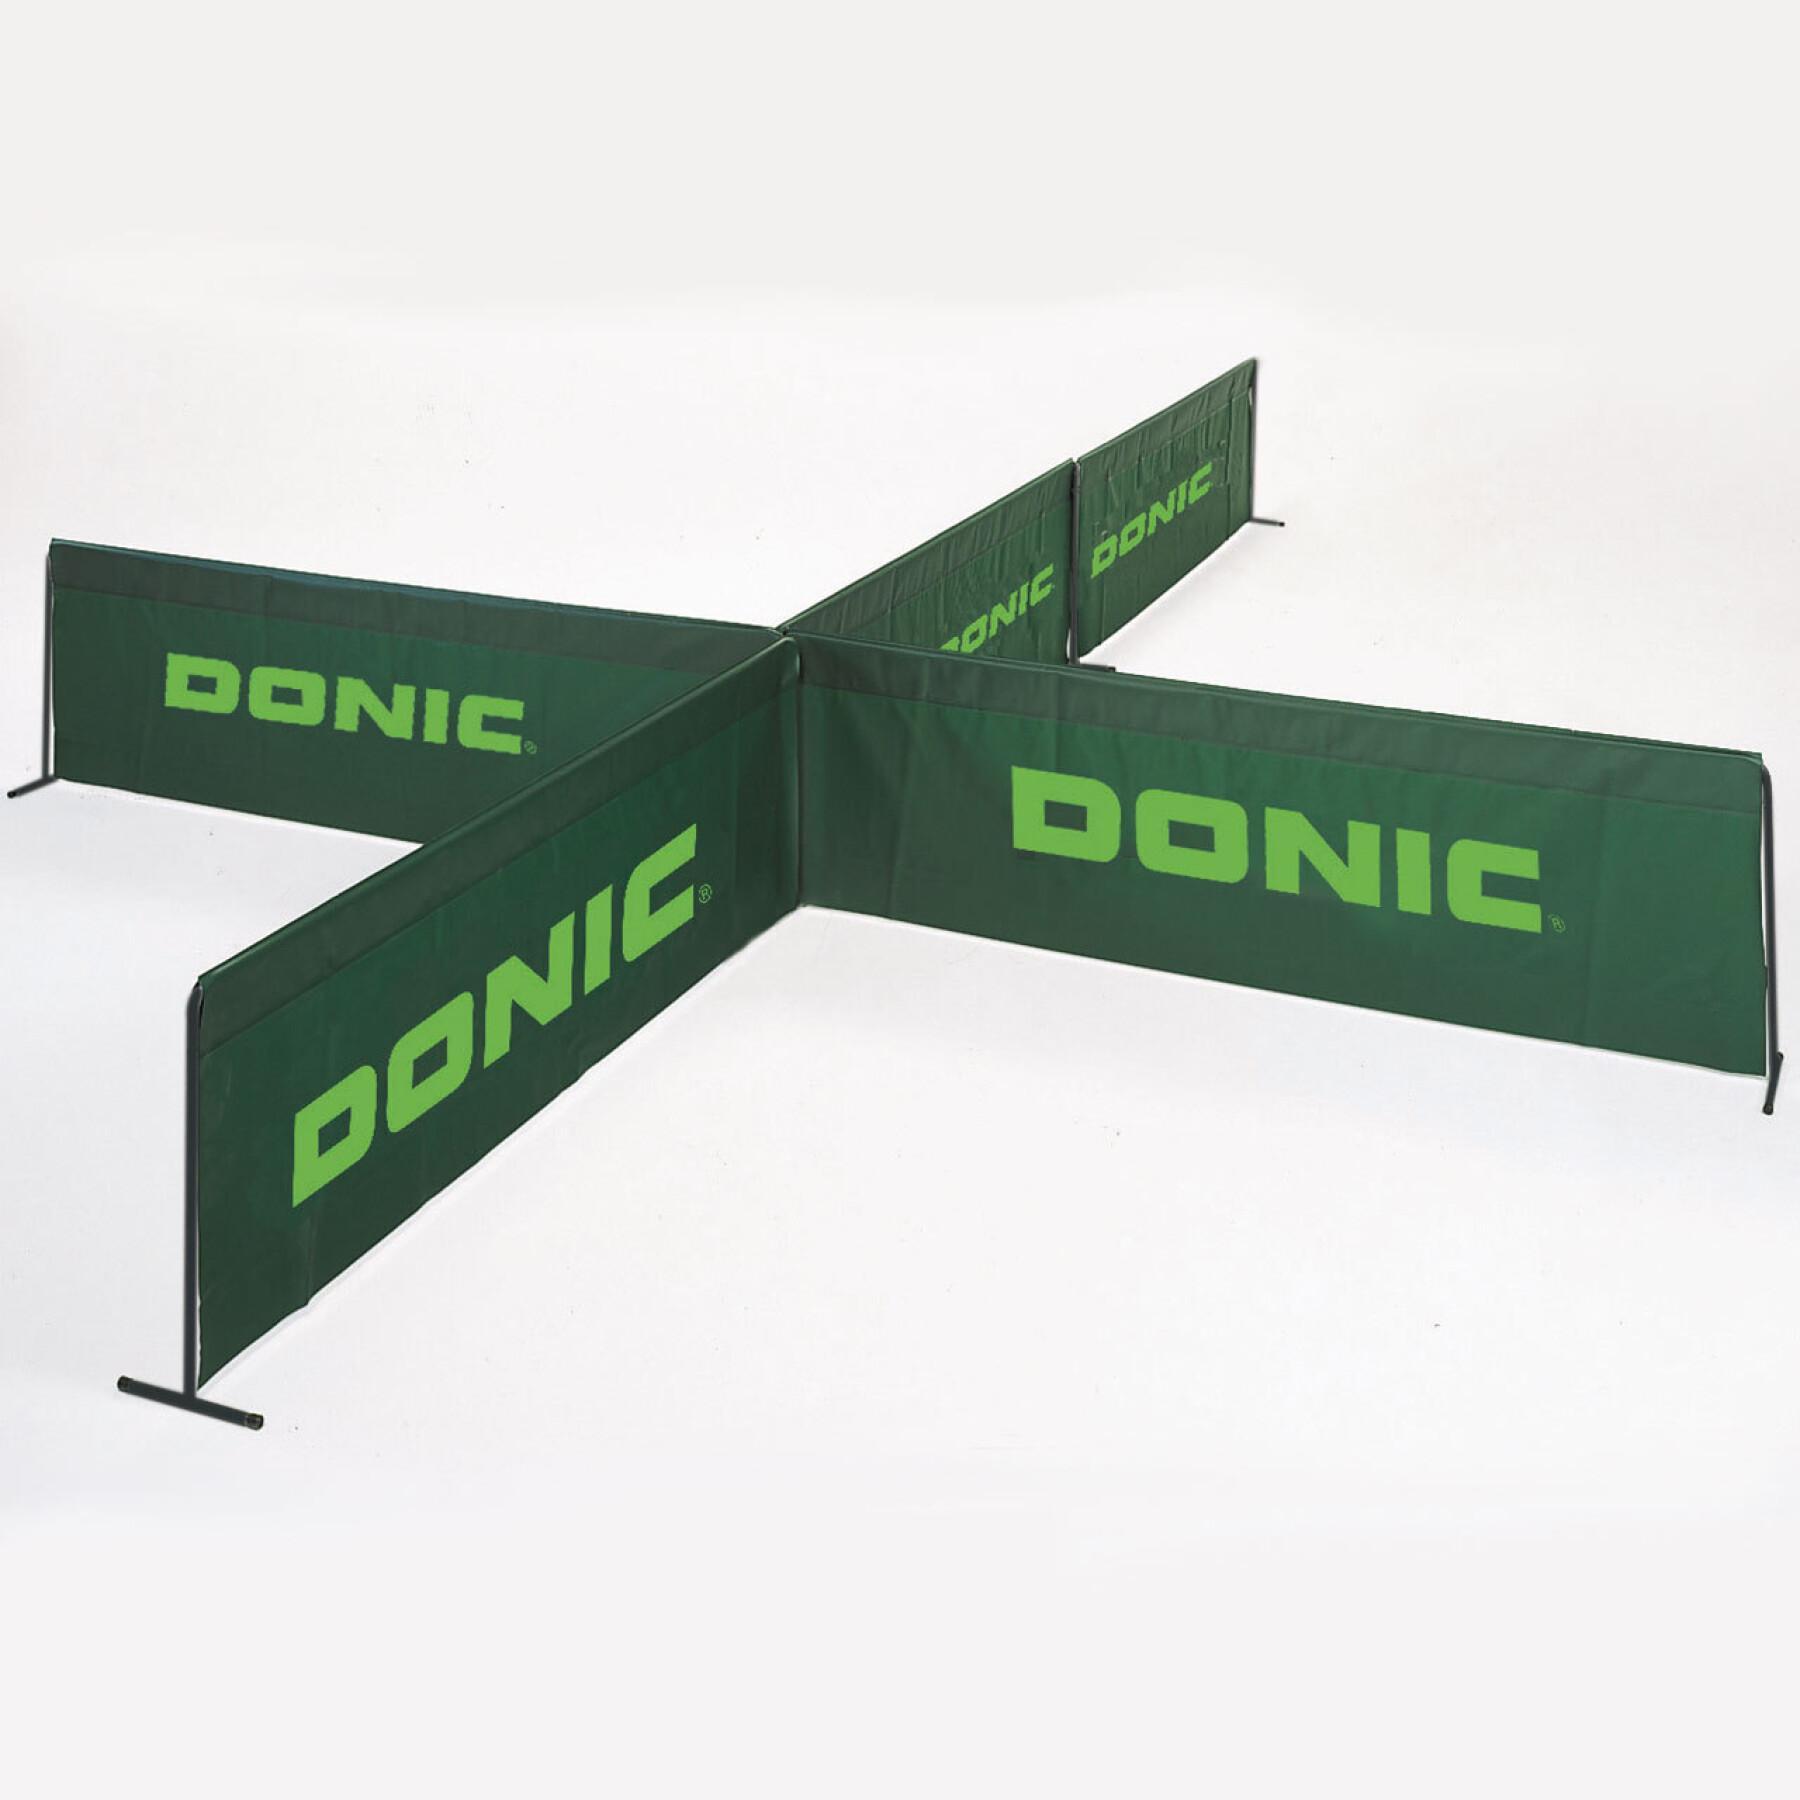 Séparateur d'aire de jeu tennis de table Donic